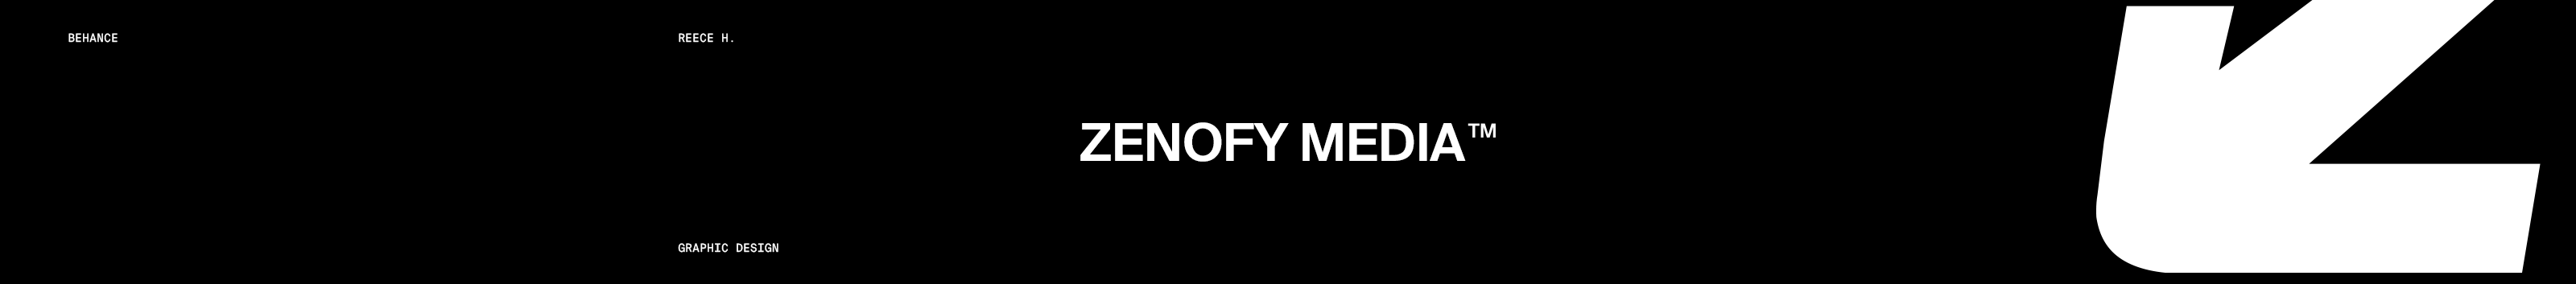 Zenofy Media's profile banner